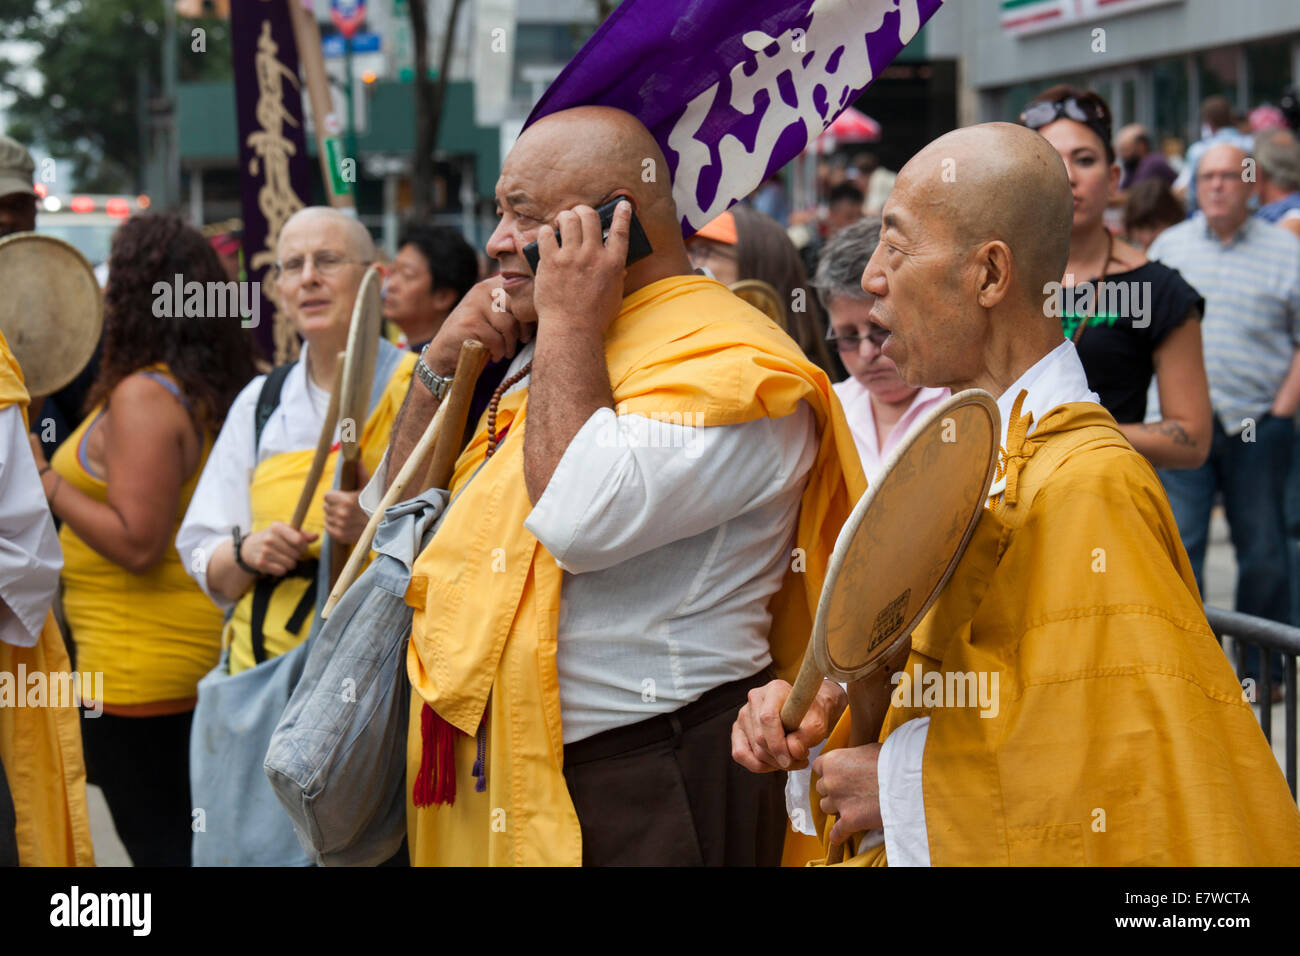 New York, New York - des moines bouddhistes beat batterie alors que l'on parle au téléphone cellulaire près de Times Square. Banque D'Images